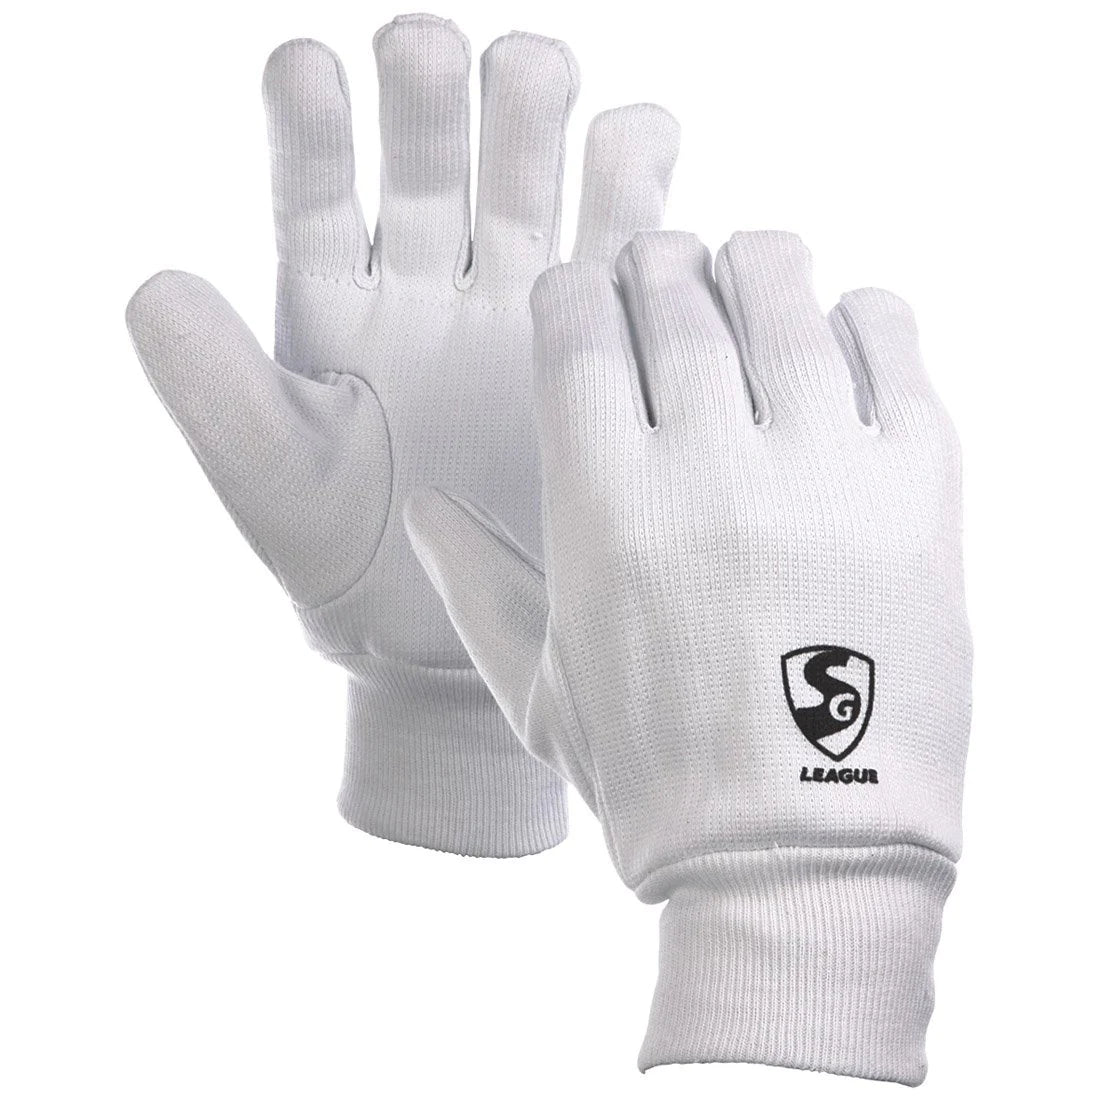 SG League Full Finger Inners Gloves